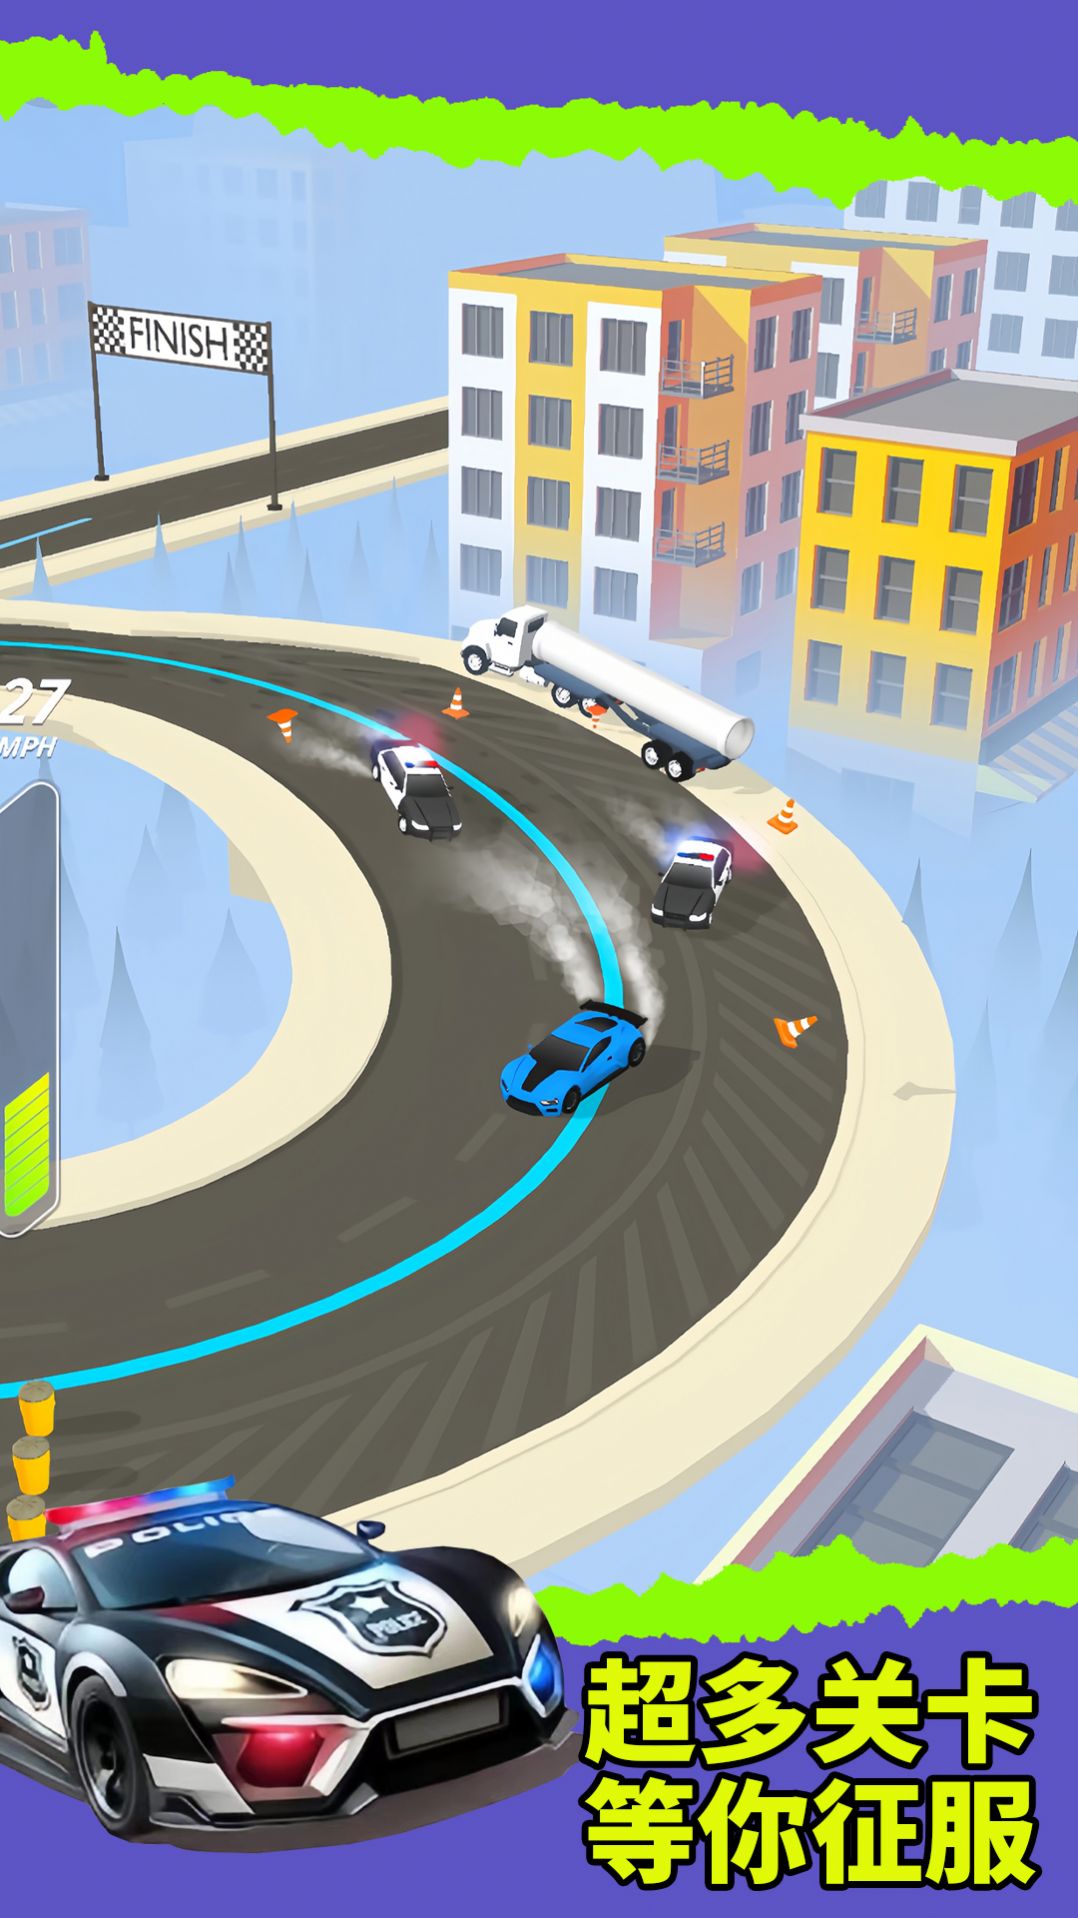 赛车弯道竞速游戏官方版 v1.0.3截图2